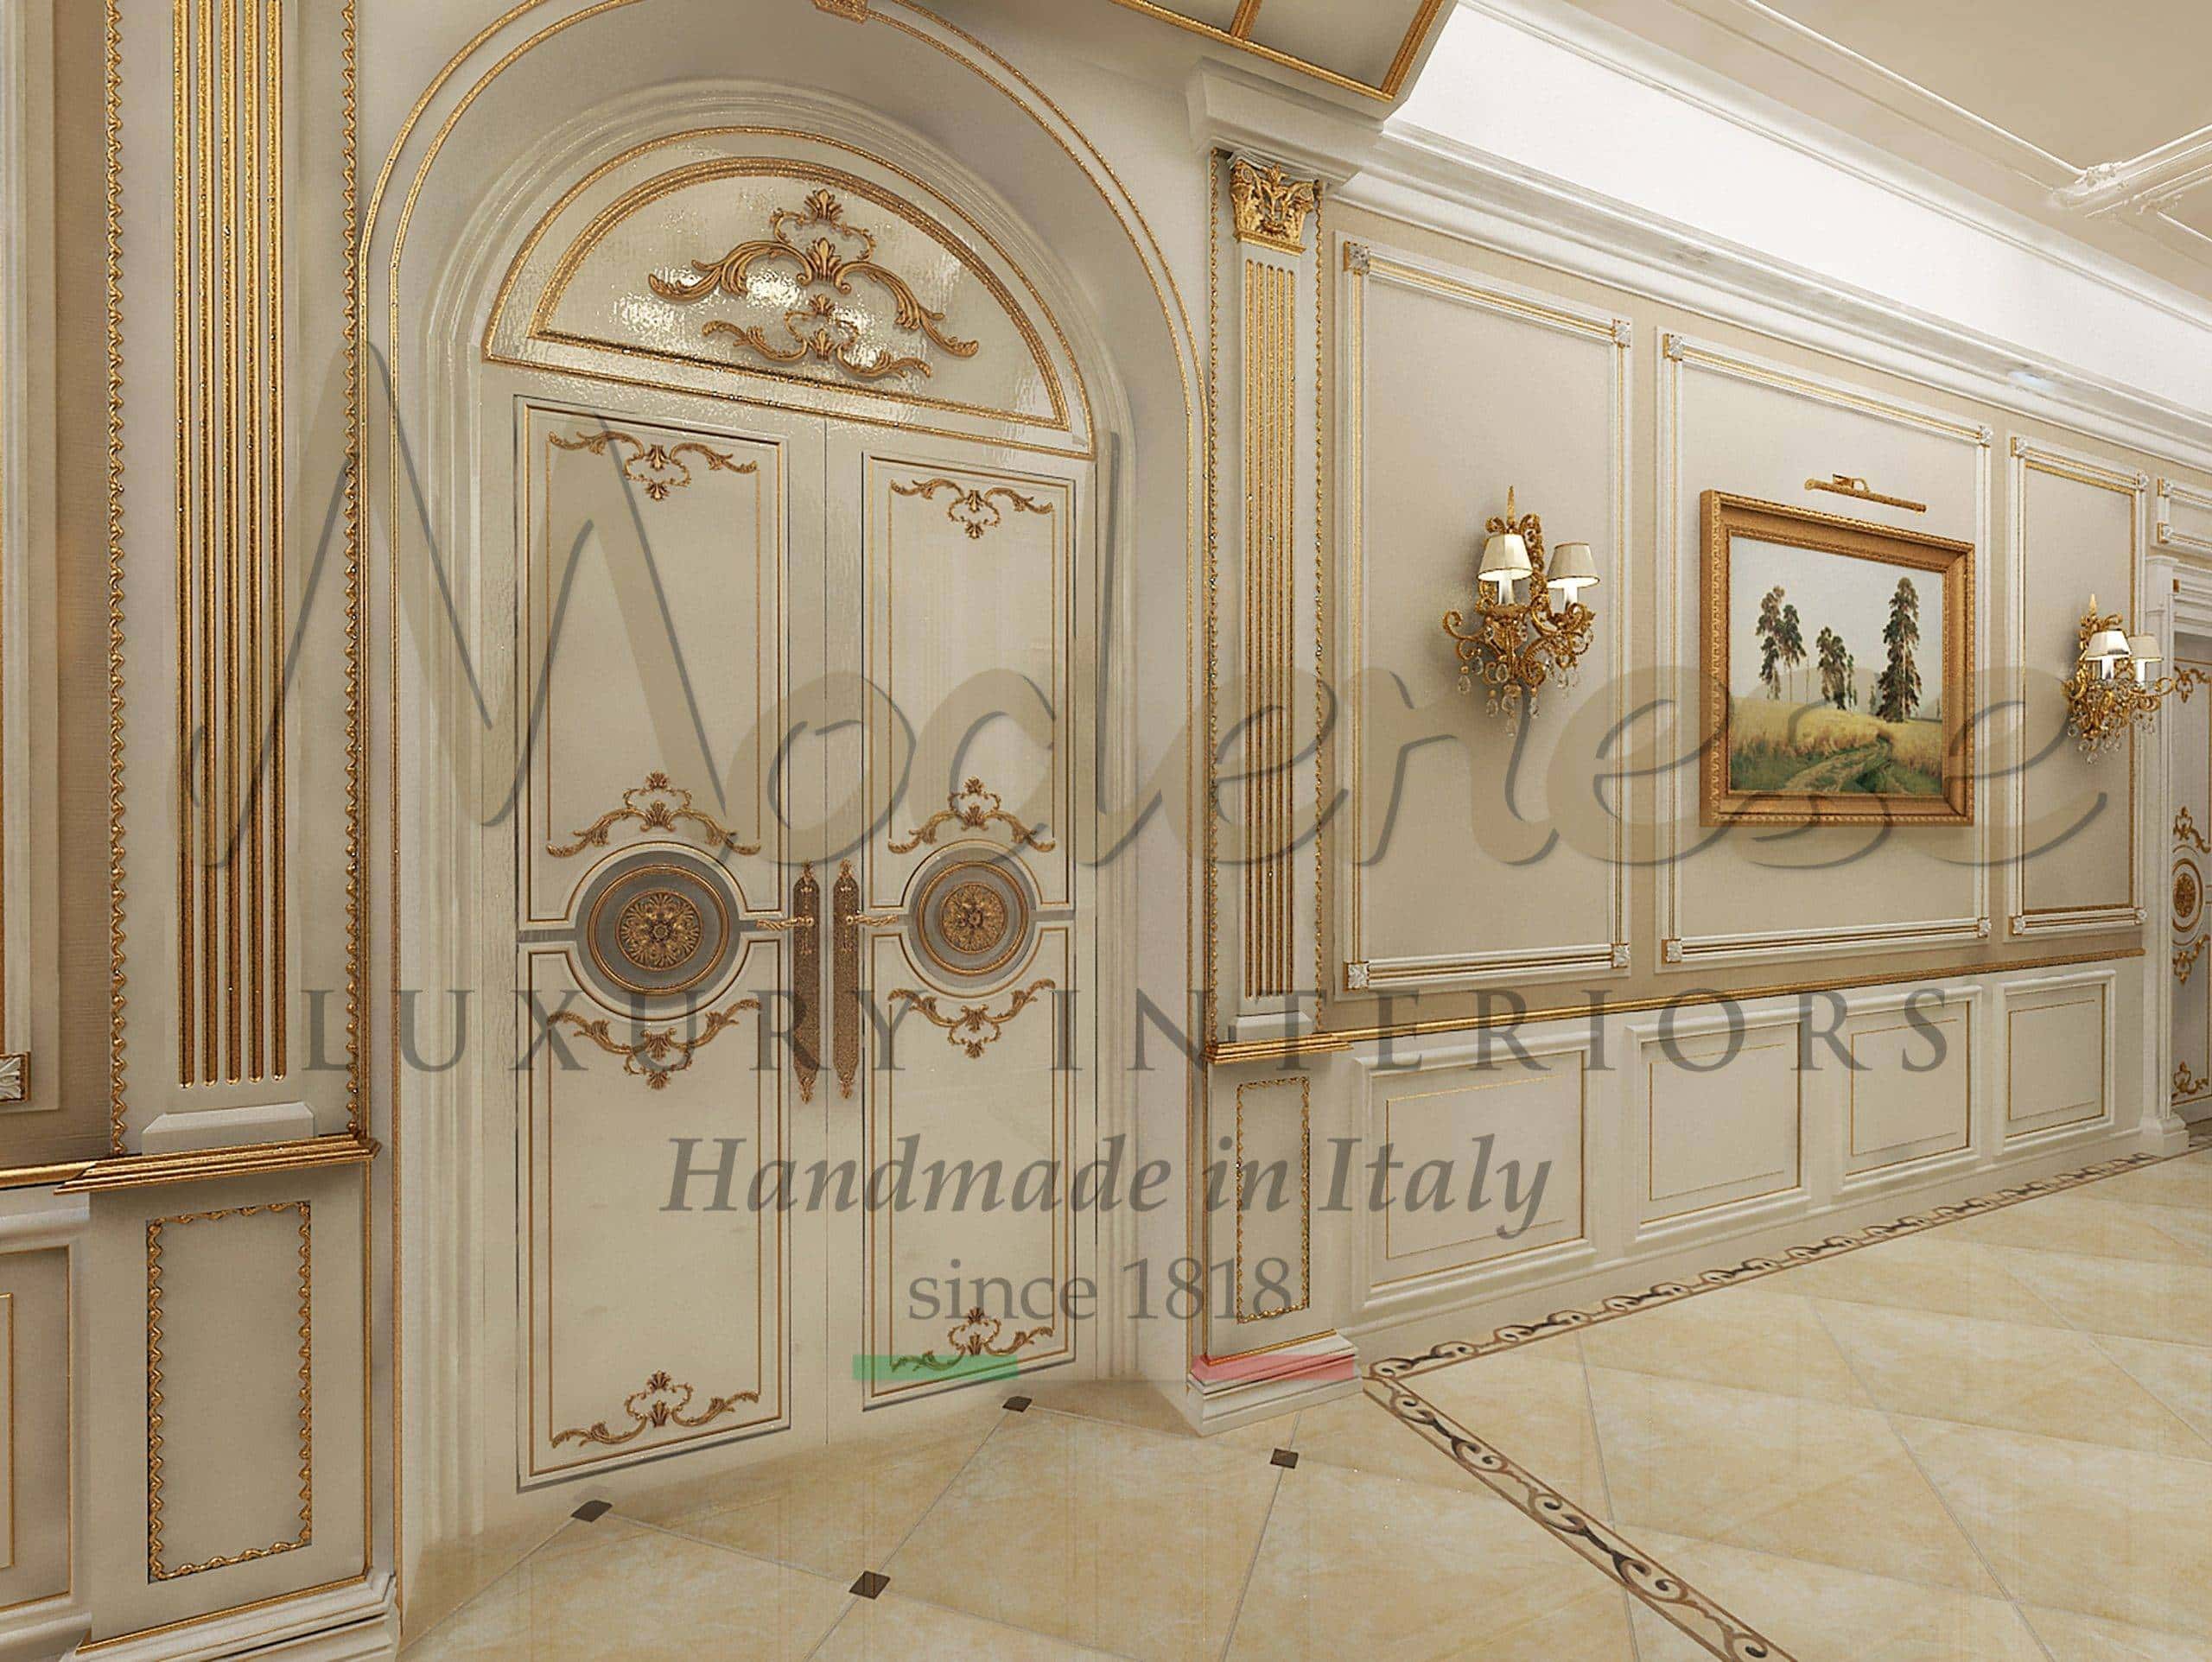 projet d'aménagement service de design intérieur luxe traditionnel portes faites à la main style baroque classique feuille d'or bois massif exclusif design victorien unique et élégant